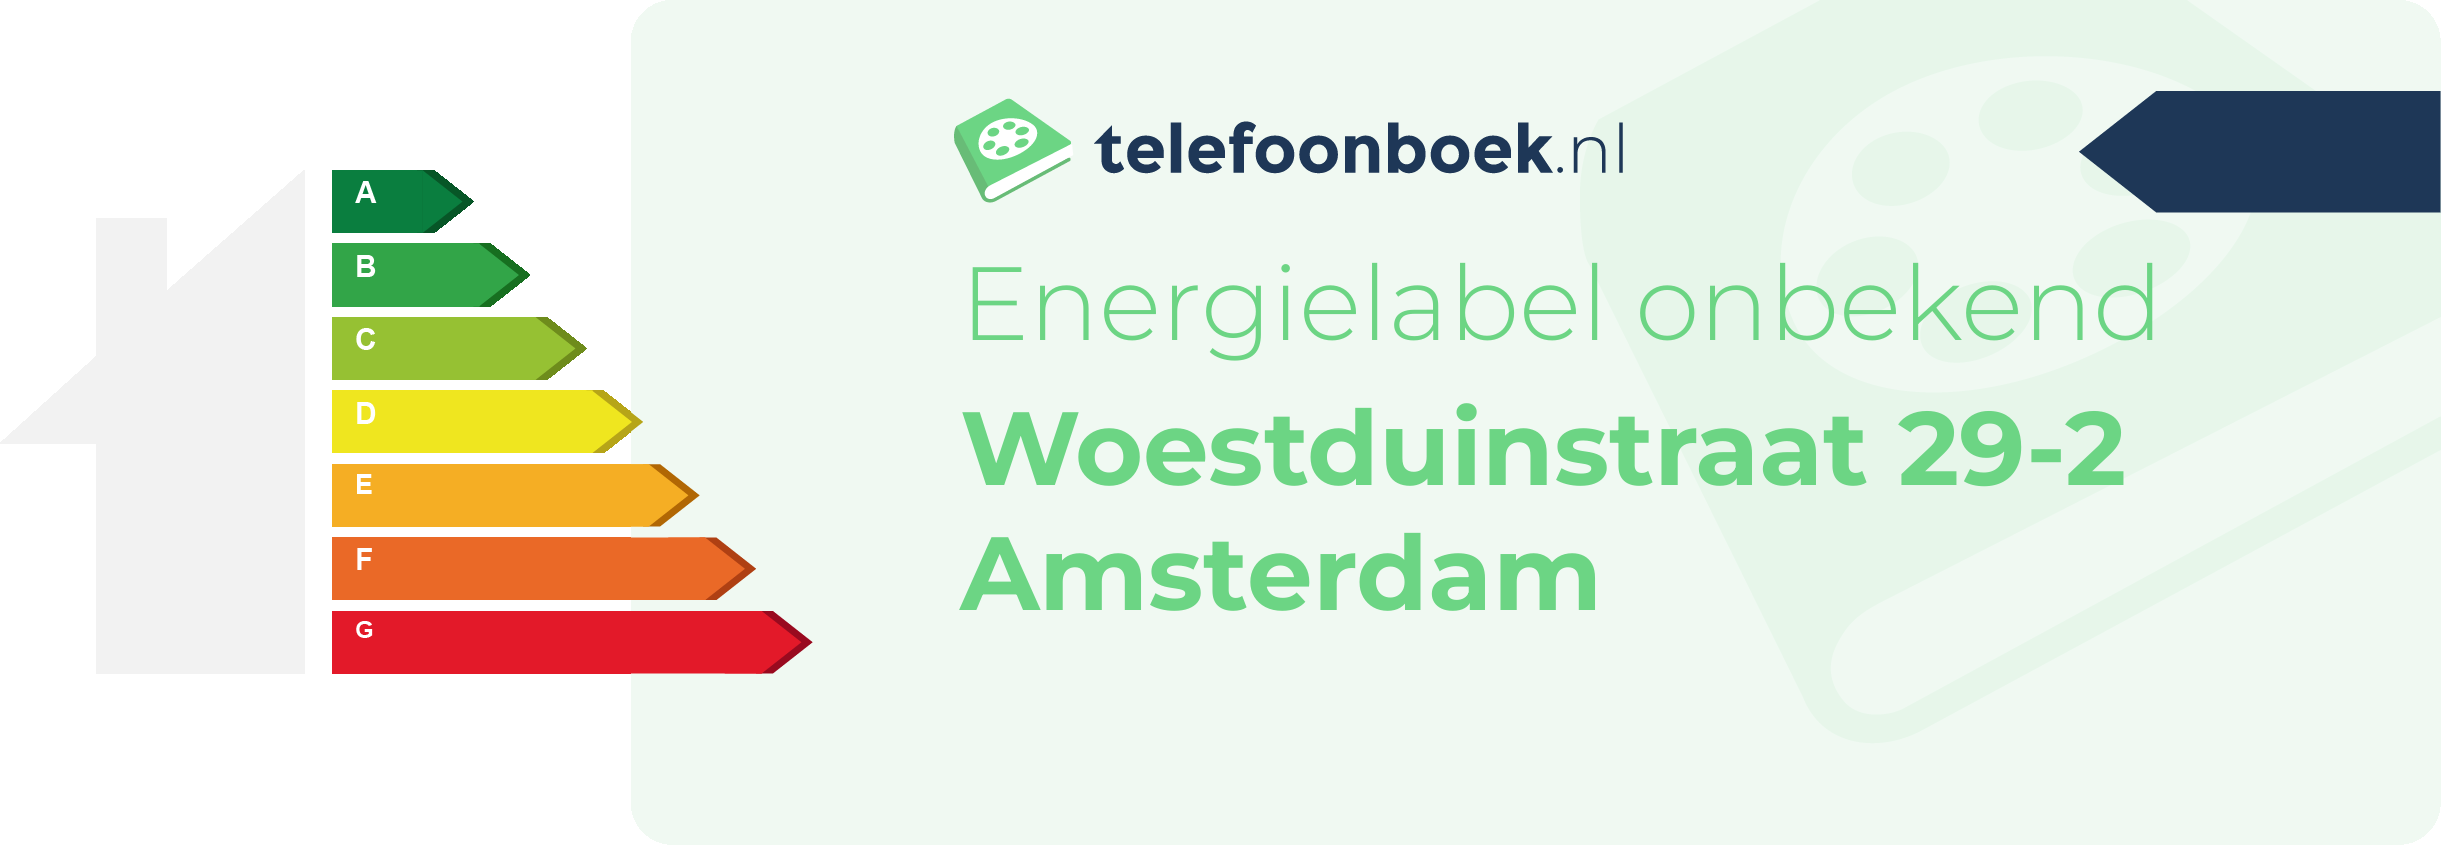 Energielabel Woestduinstraat 29-2 Amsterdam